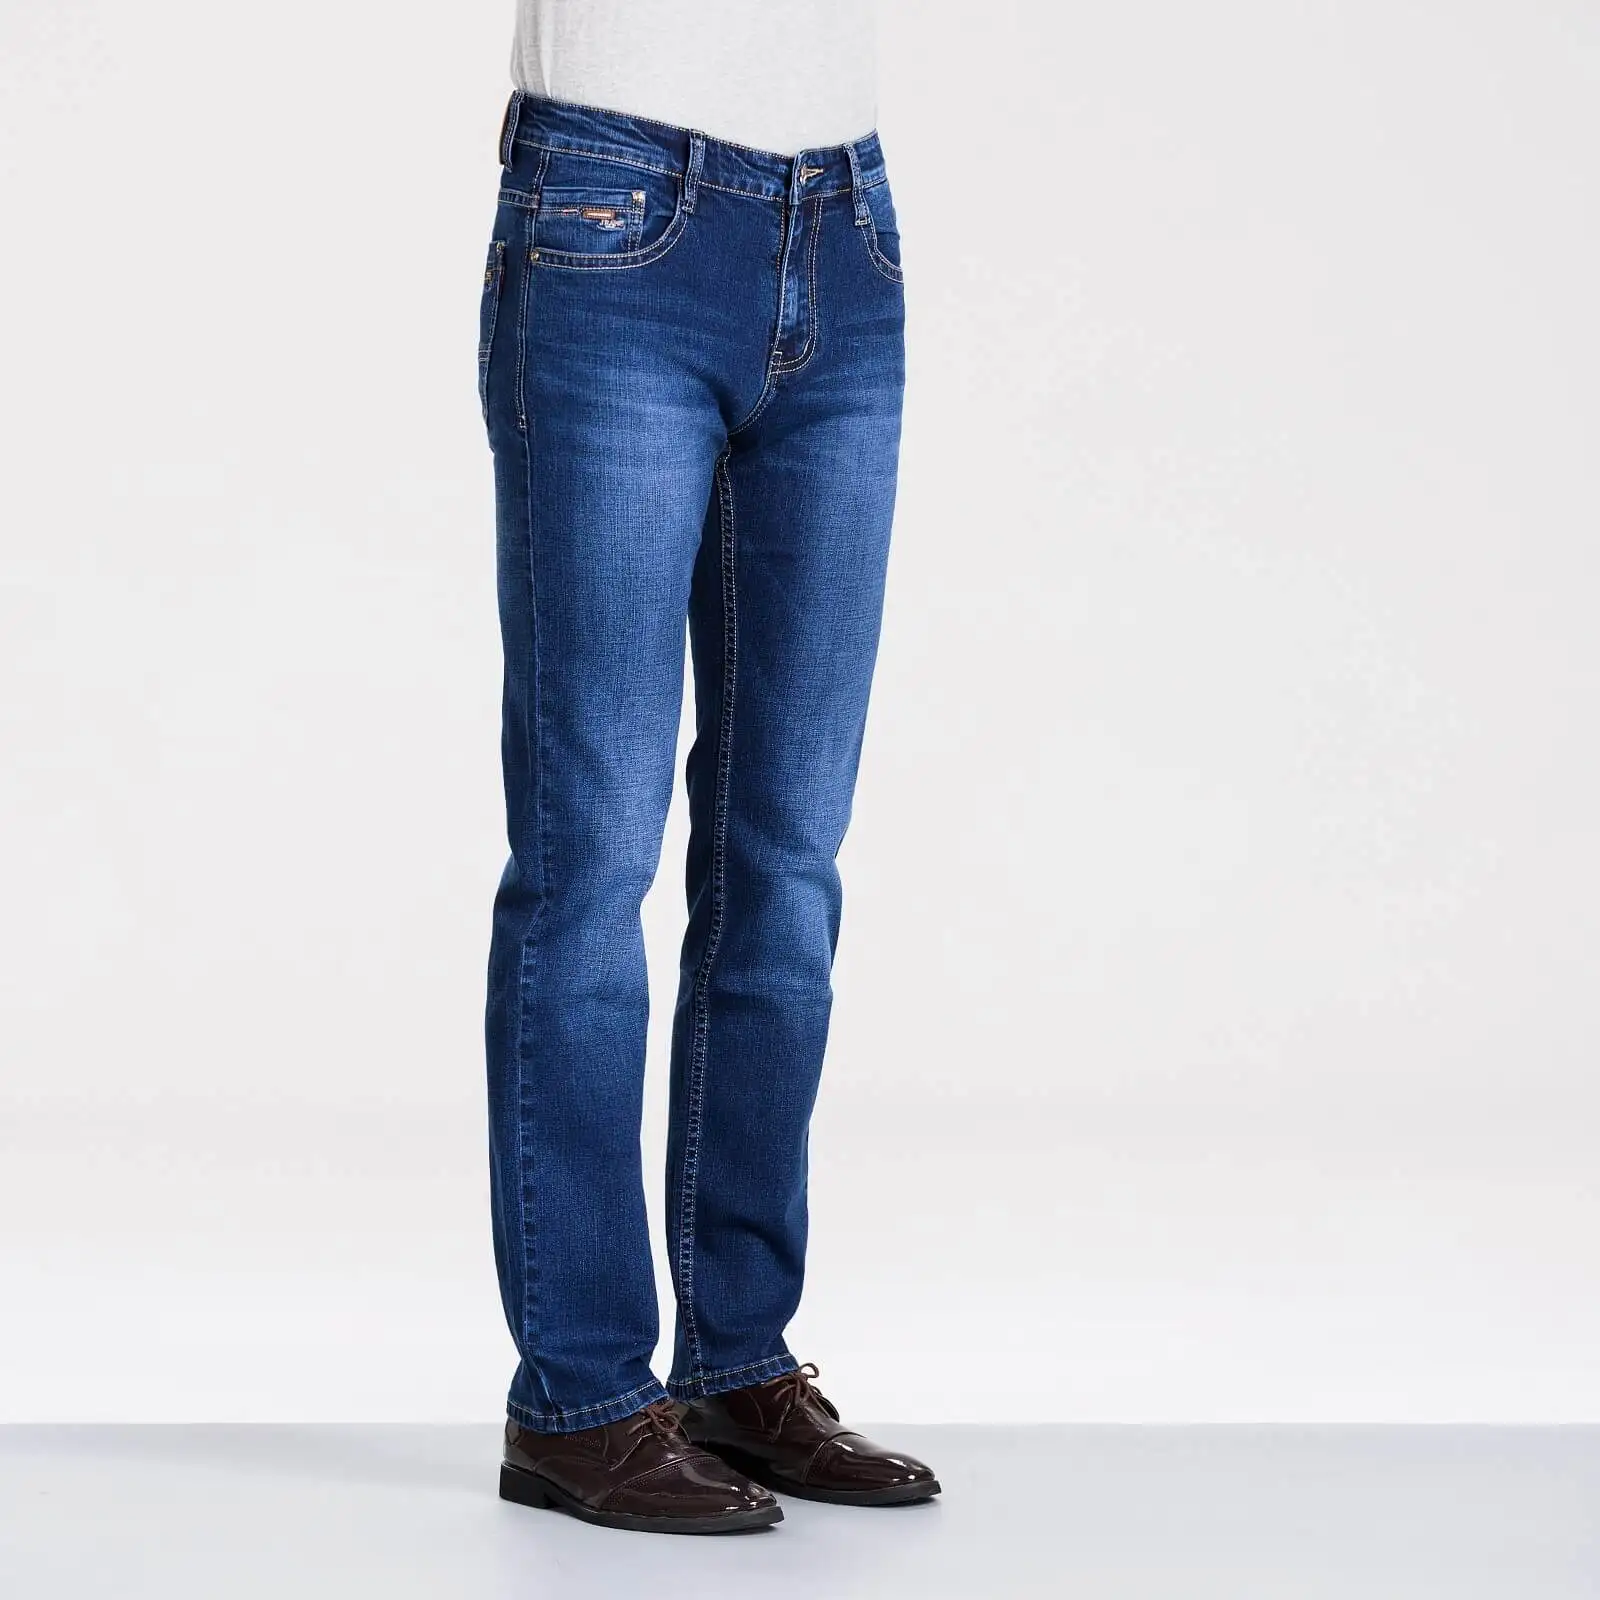 Макет бренд MPZ809 джинсы мужские повседневные джинсы облегающие брюки высокое качество deskared2 джинсы мода 38 40 размер